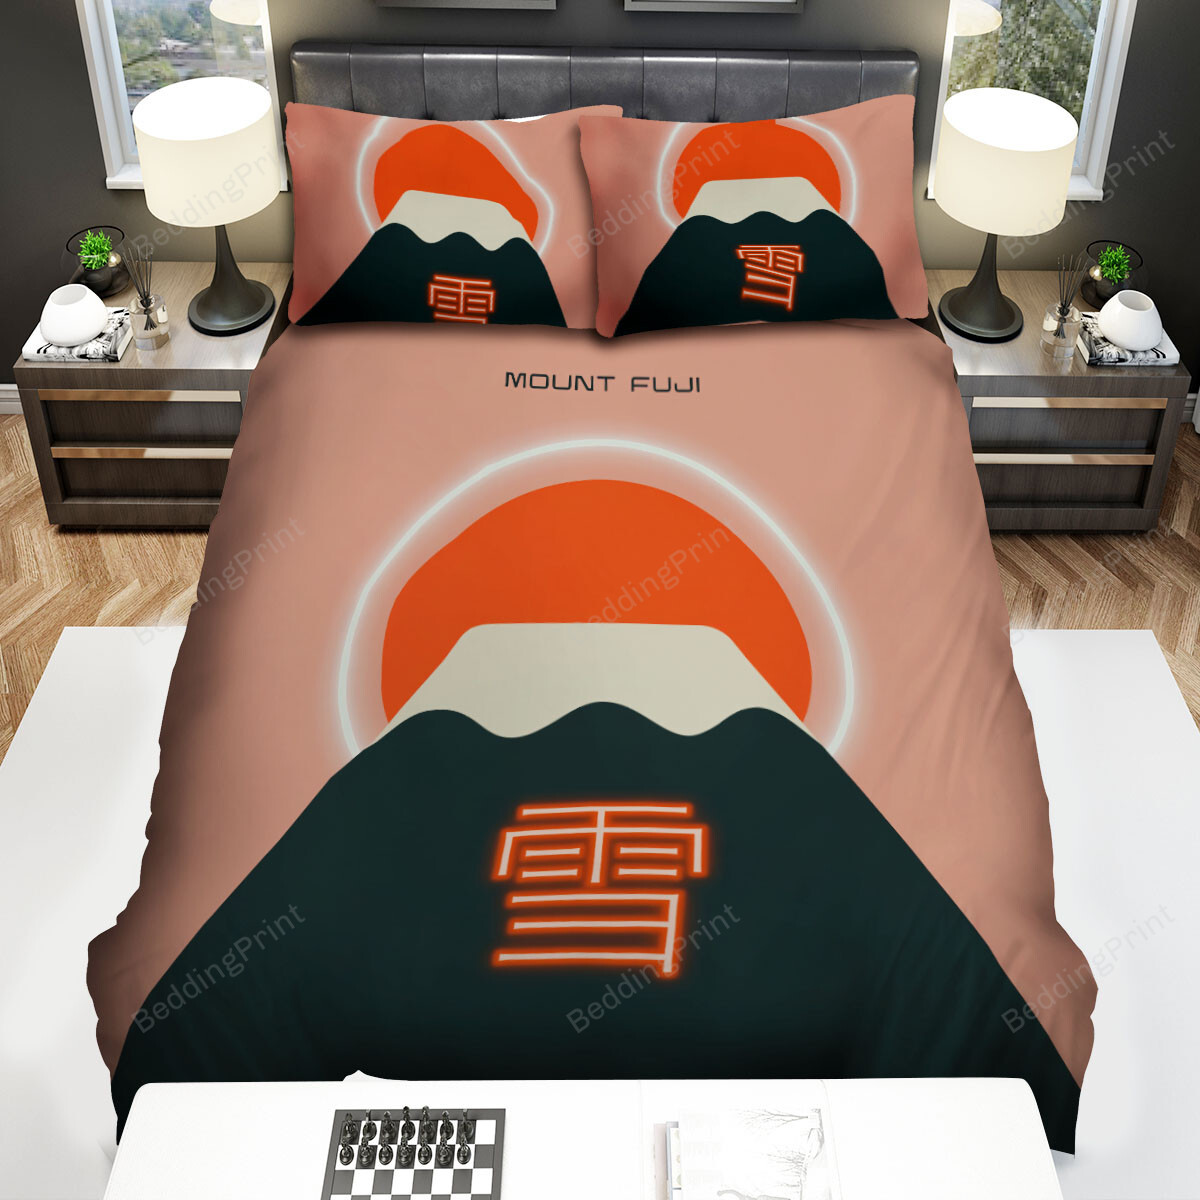 Mount Fuji Red Sun Minimal Illustration Bed Sheets Spread Comforter Duvet Cover Bedding Sets